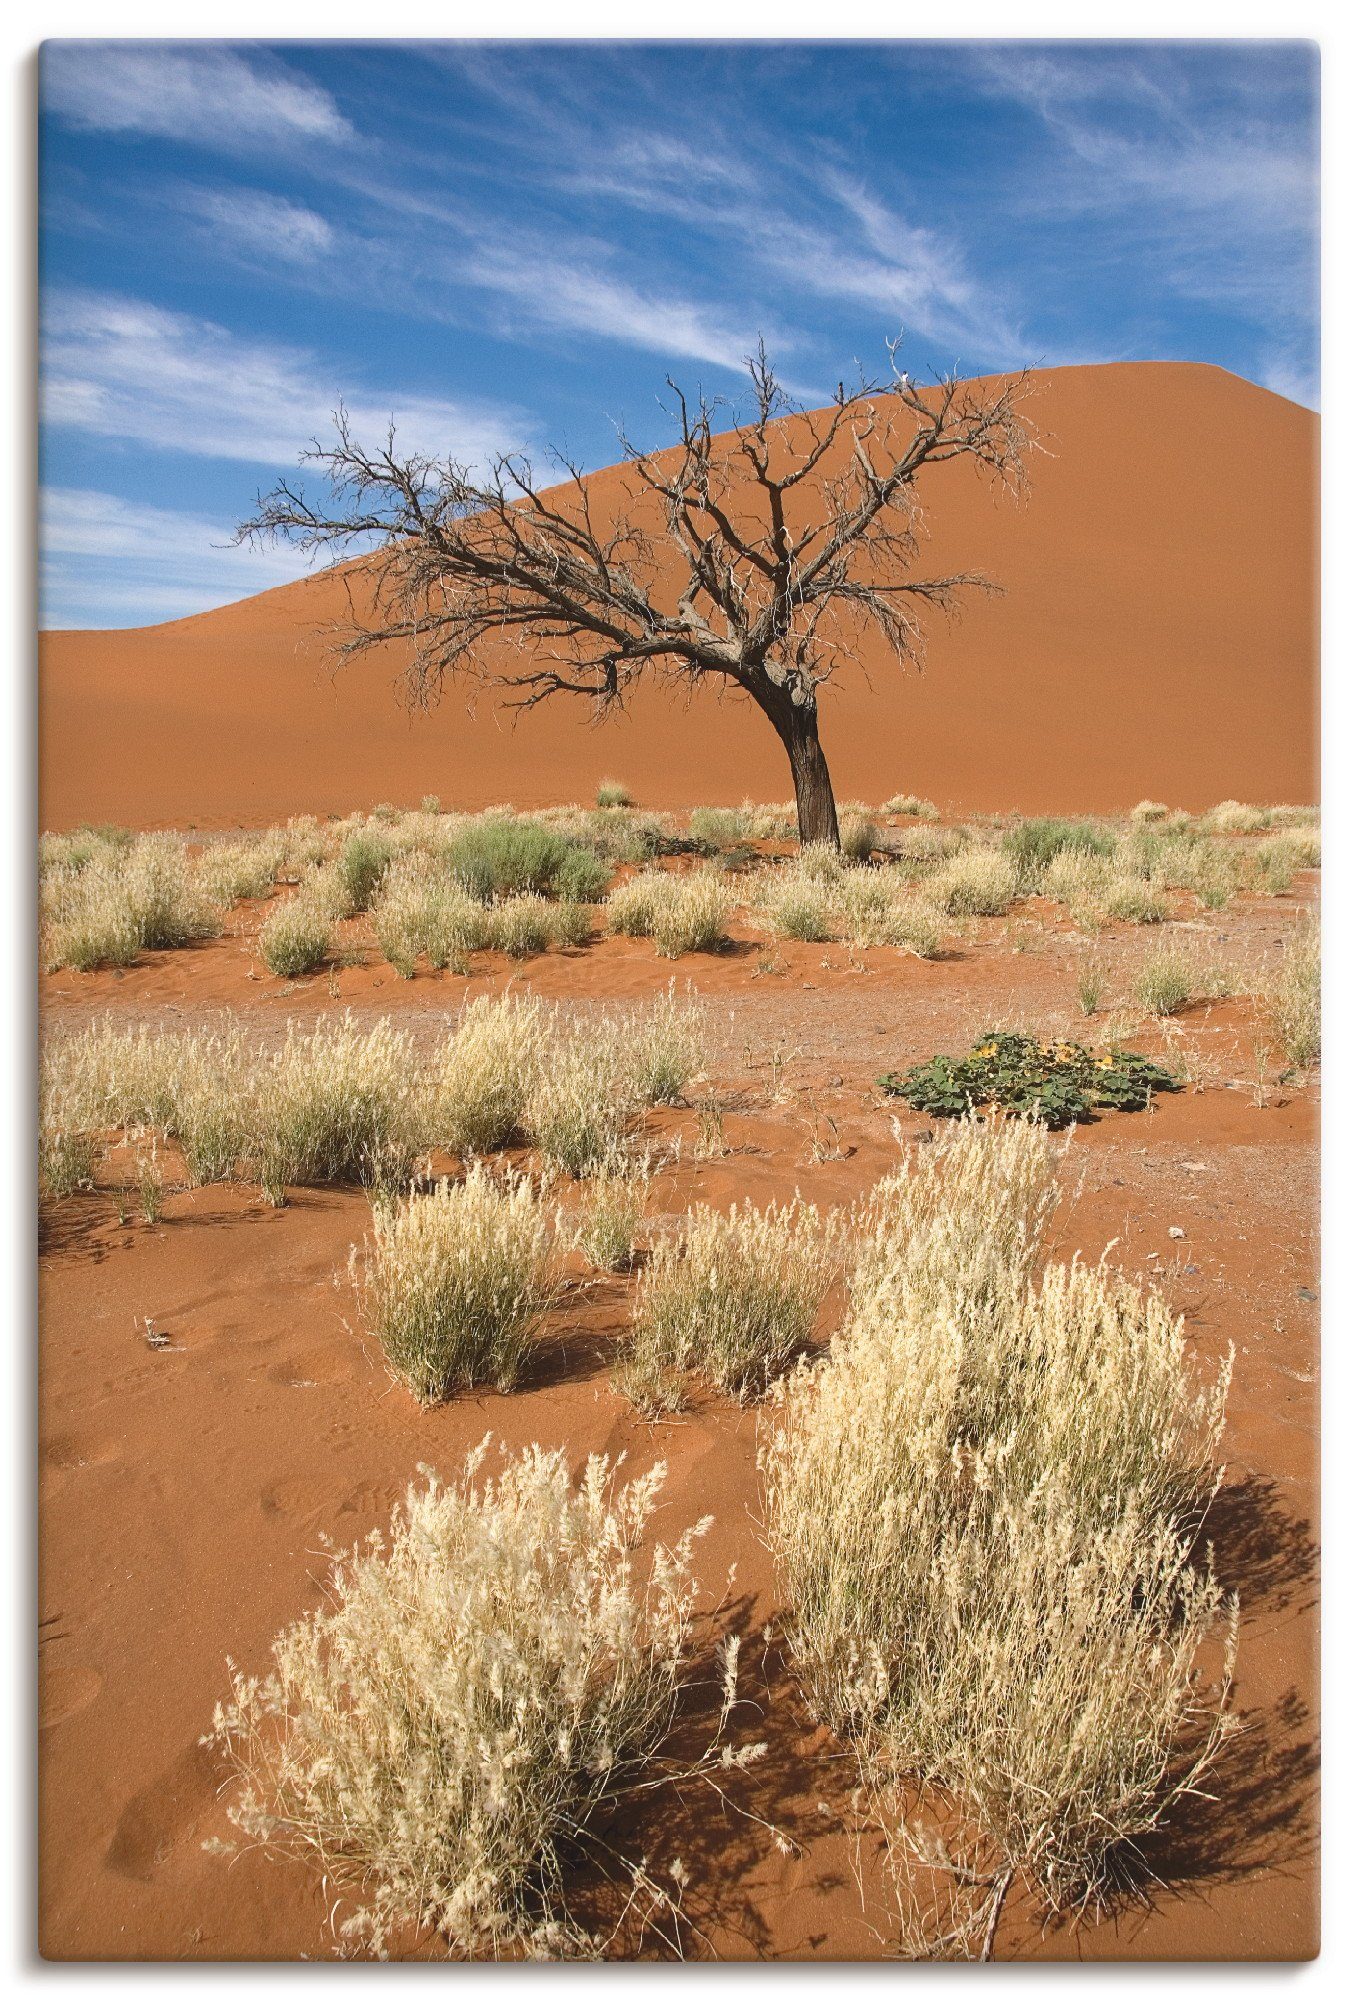 Artland Artprint Namib-woestijn 2 in vele afmetingen & productsoorten - artprint van aluminium / artprint voor buiten, artprint op linnen, poster, muursticker / wandfolie ook gesch